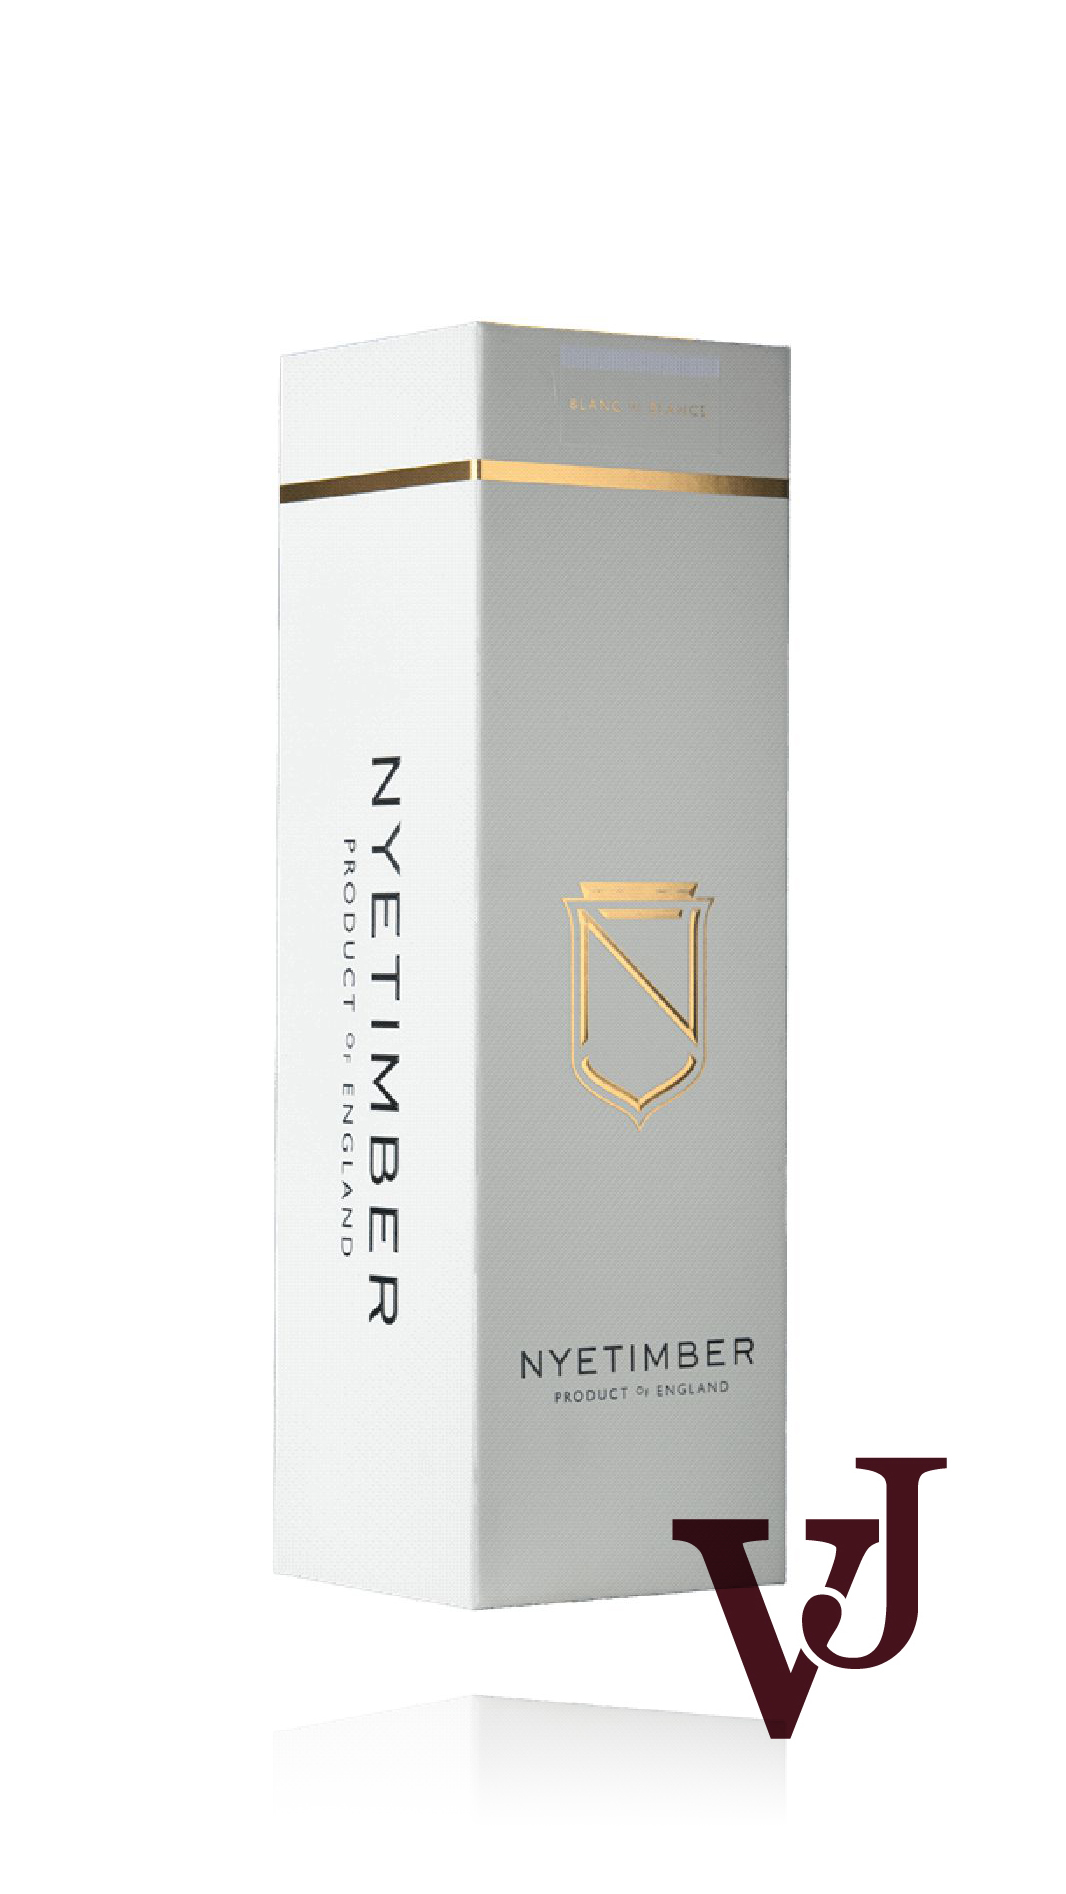 Vitt Vin - Nyetimber Blanc de Blancs 2015 artikel nummer 9032701 från producenten Nyetimber från England.